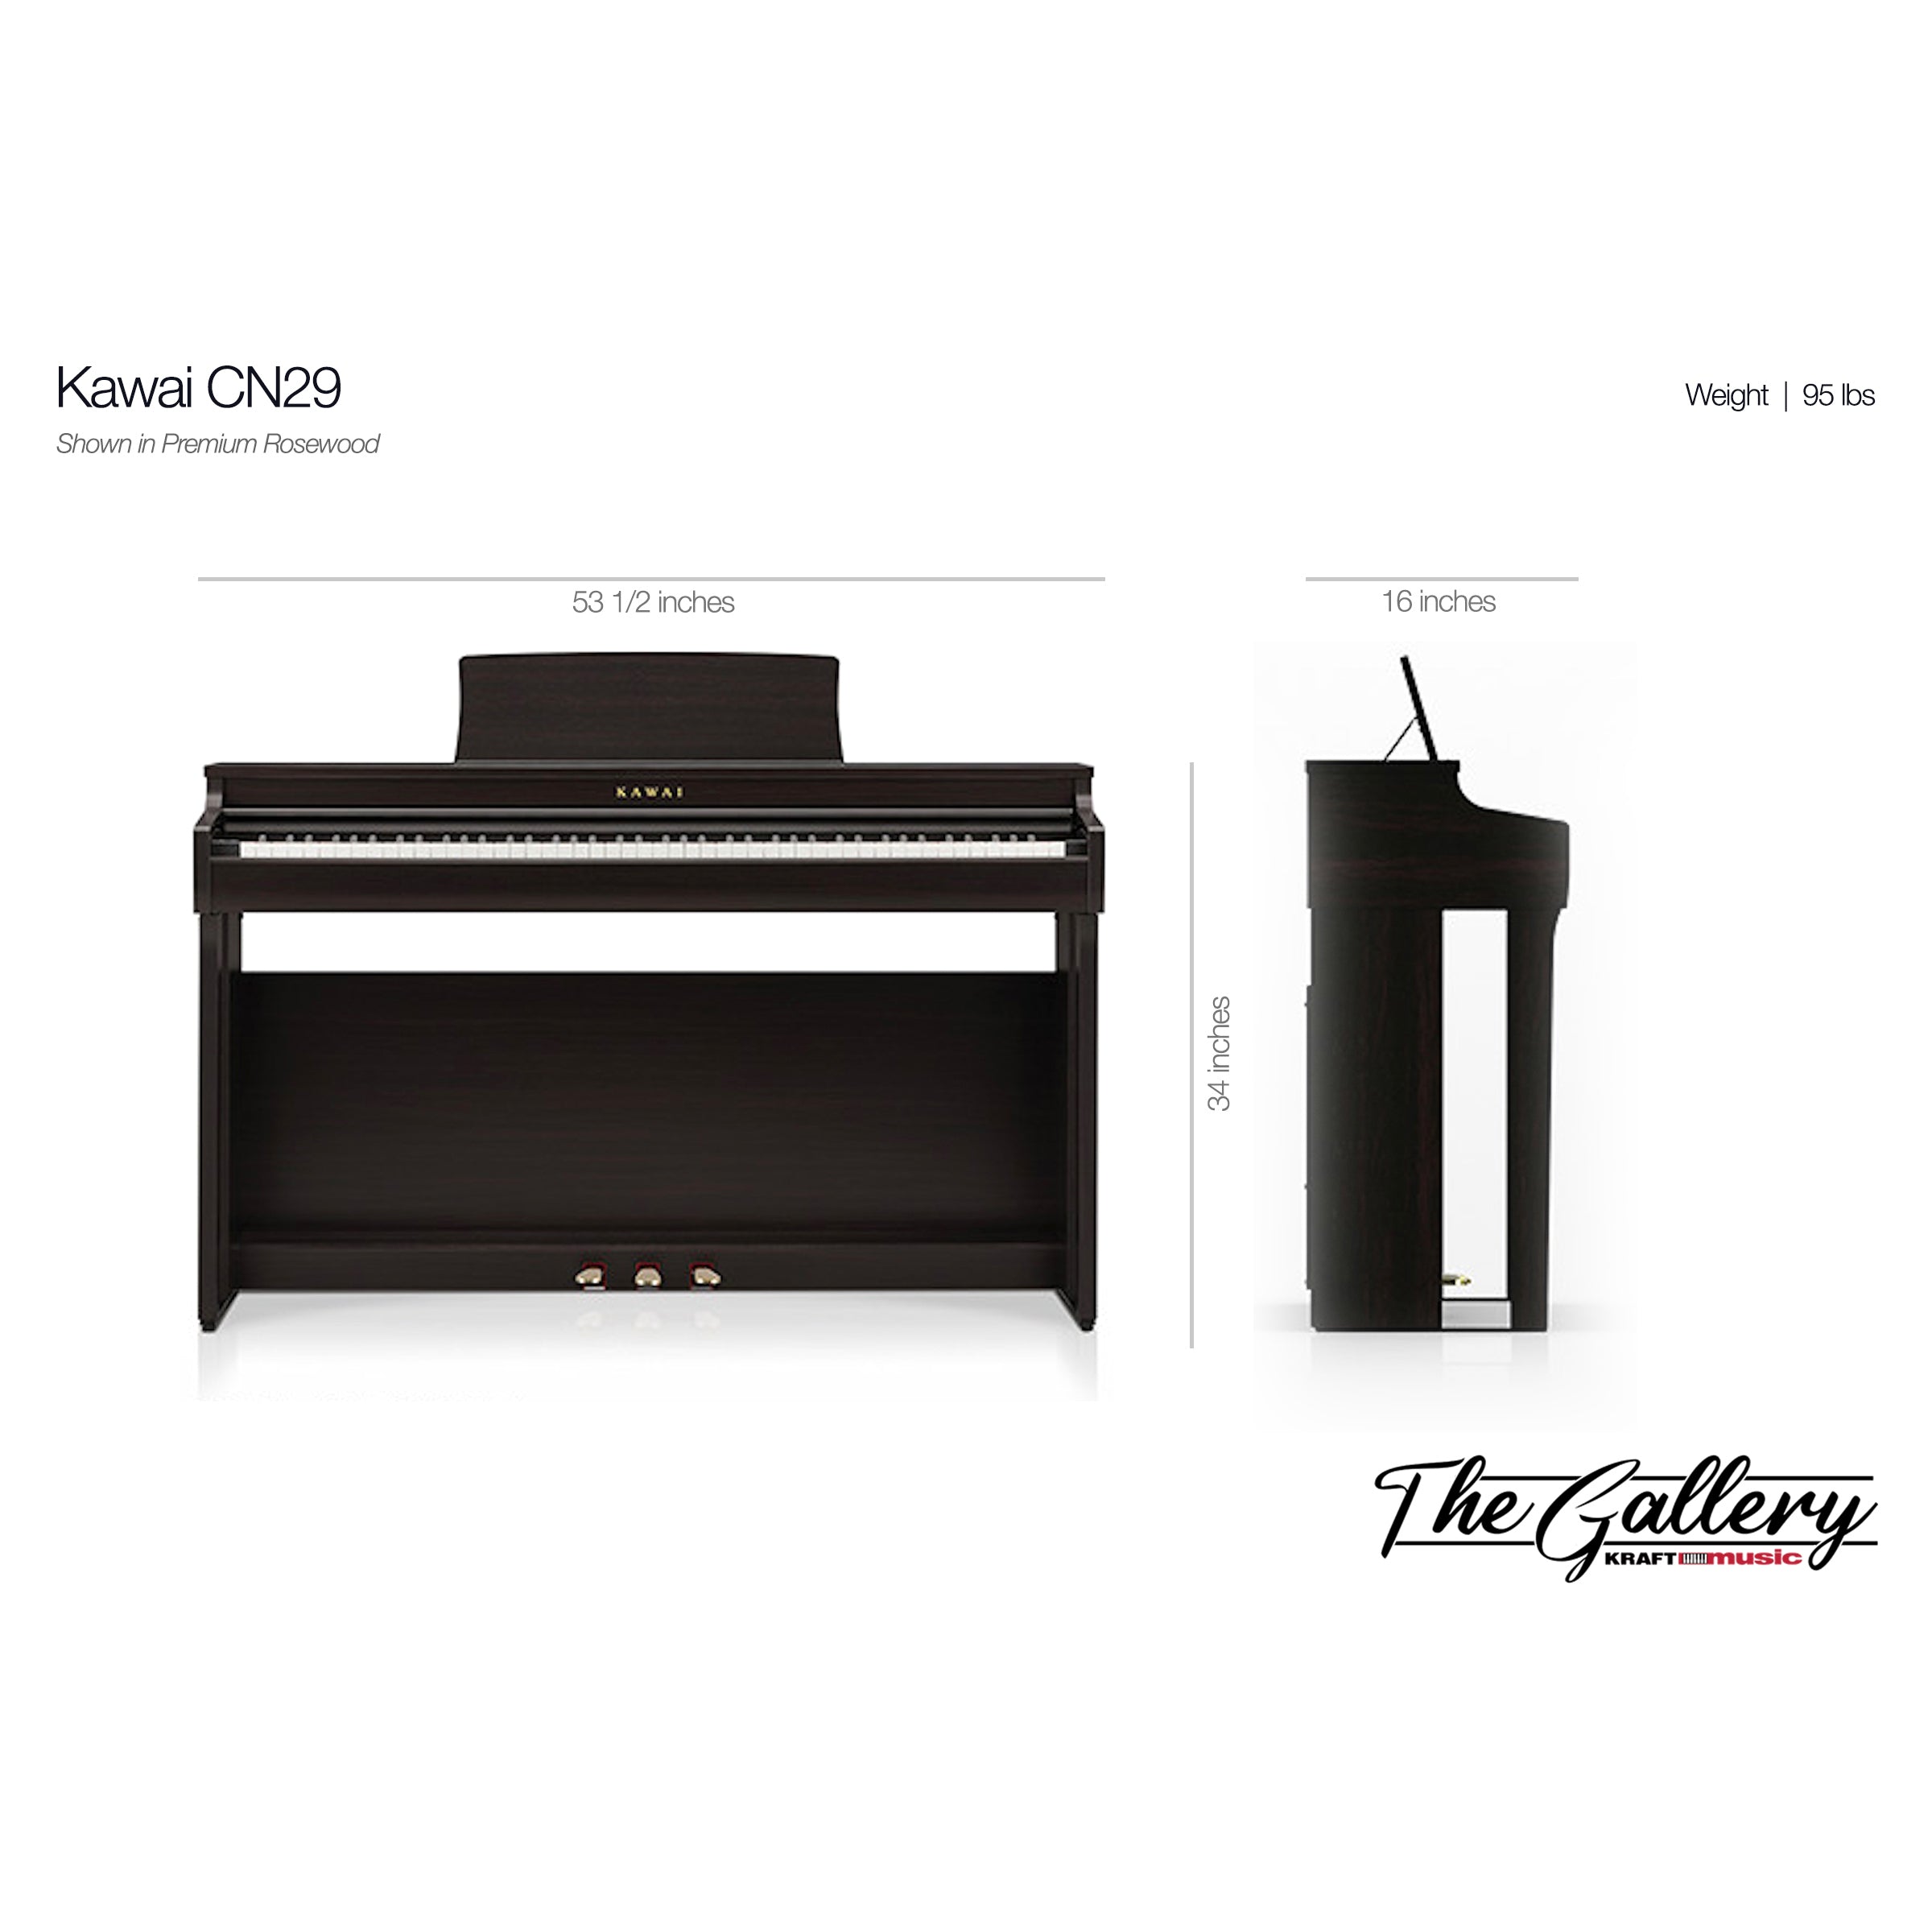 Kawai CN29 Digital Piano - Dimensions